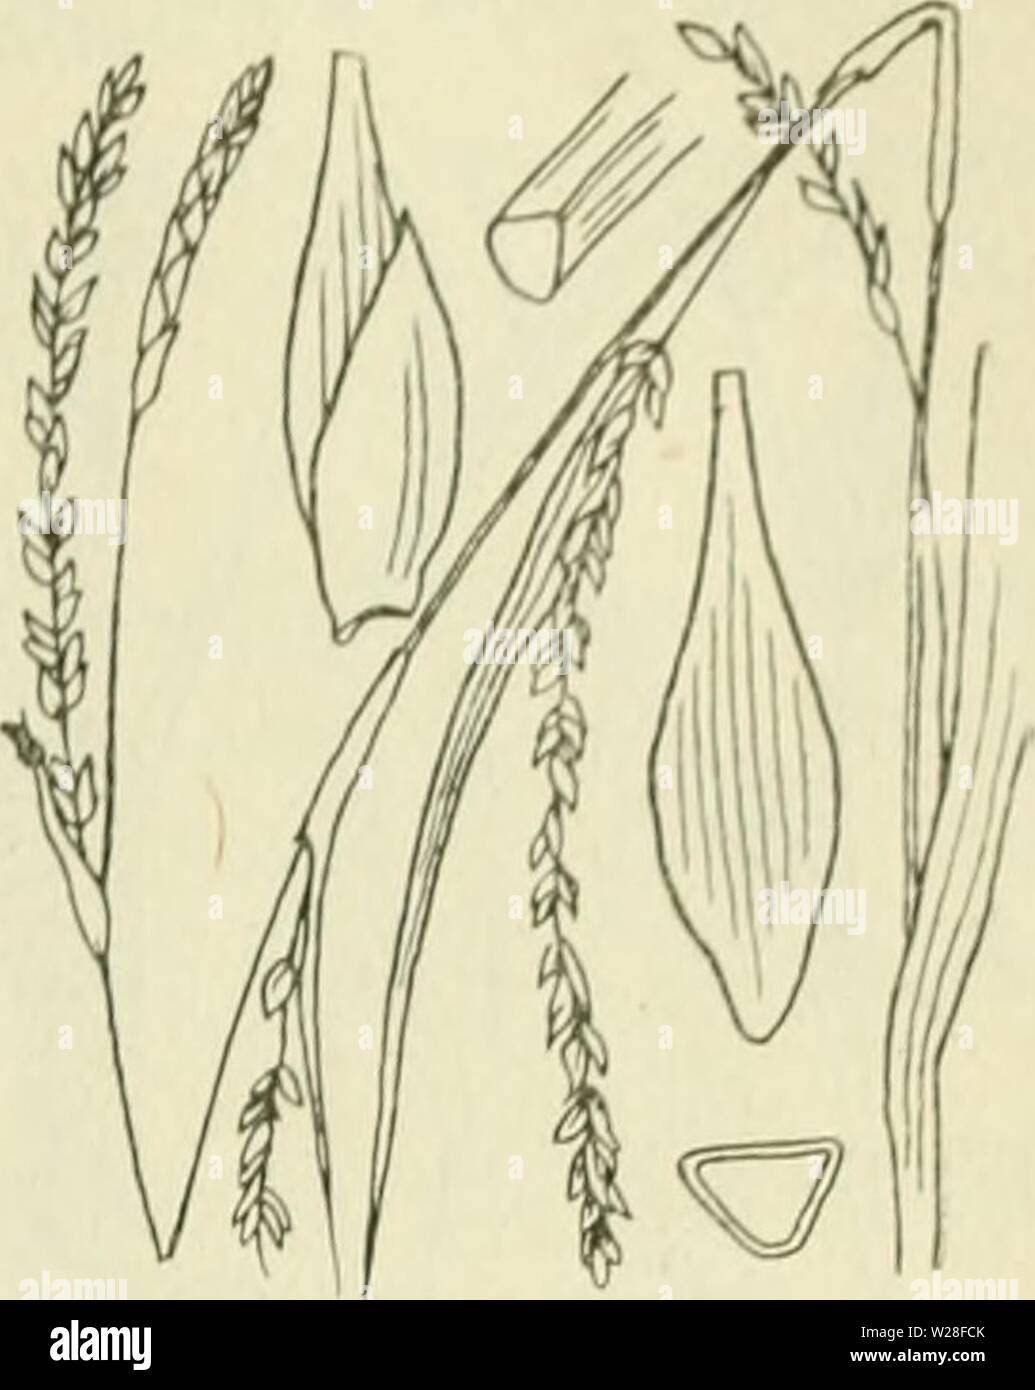 Archive image from page 444 of De flora van Nederland (1909-11). De flora van Nederland  defloravannederl01heuk Year: 1909-11.  FAM1L11-: 17. â CYPERACEAE. 403    Carex strigosa Fig. 326. zaani even ina als ile iinitjes. Deze (fiÂ«. 32(5) zijn drickantit,'-Iancctvormitj;-ellipsoÃ¯discli, circa 3 mM lanj,', veelnervi.u, noiei(Jeliji&lt; in den zeer iiei&lt;notten snavel versmald. Het mannelijke aartje is los- bloemij;, smal, verlcn.ud, tof 5 cM lanf,', de kafjes zijn vaak iets bruinachtig'niet stevijje, groene middenstreep. De vruchten zijn zeer klein, nog niet 2 mM lang, eirond, driekanti.u. Stock Photo